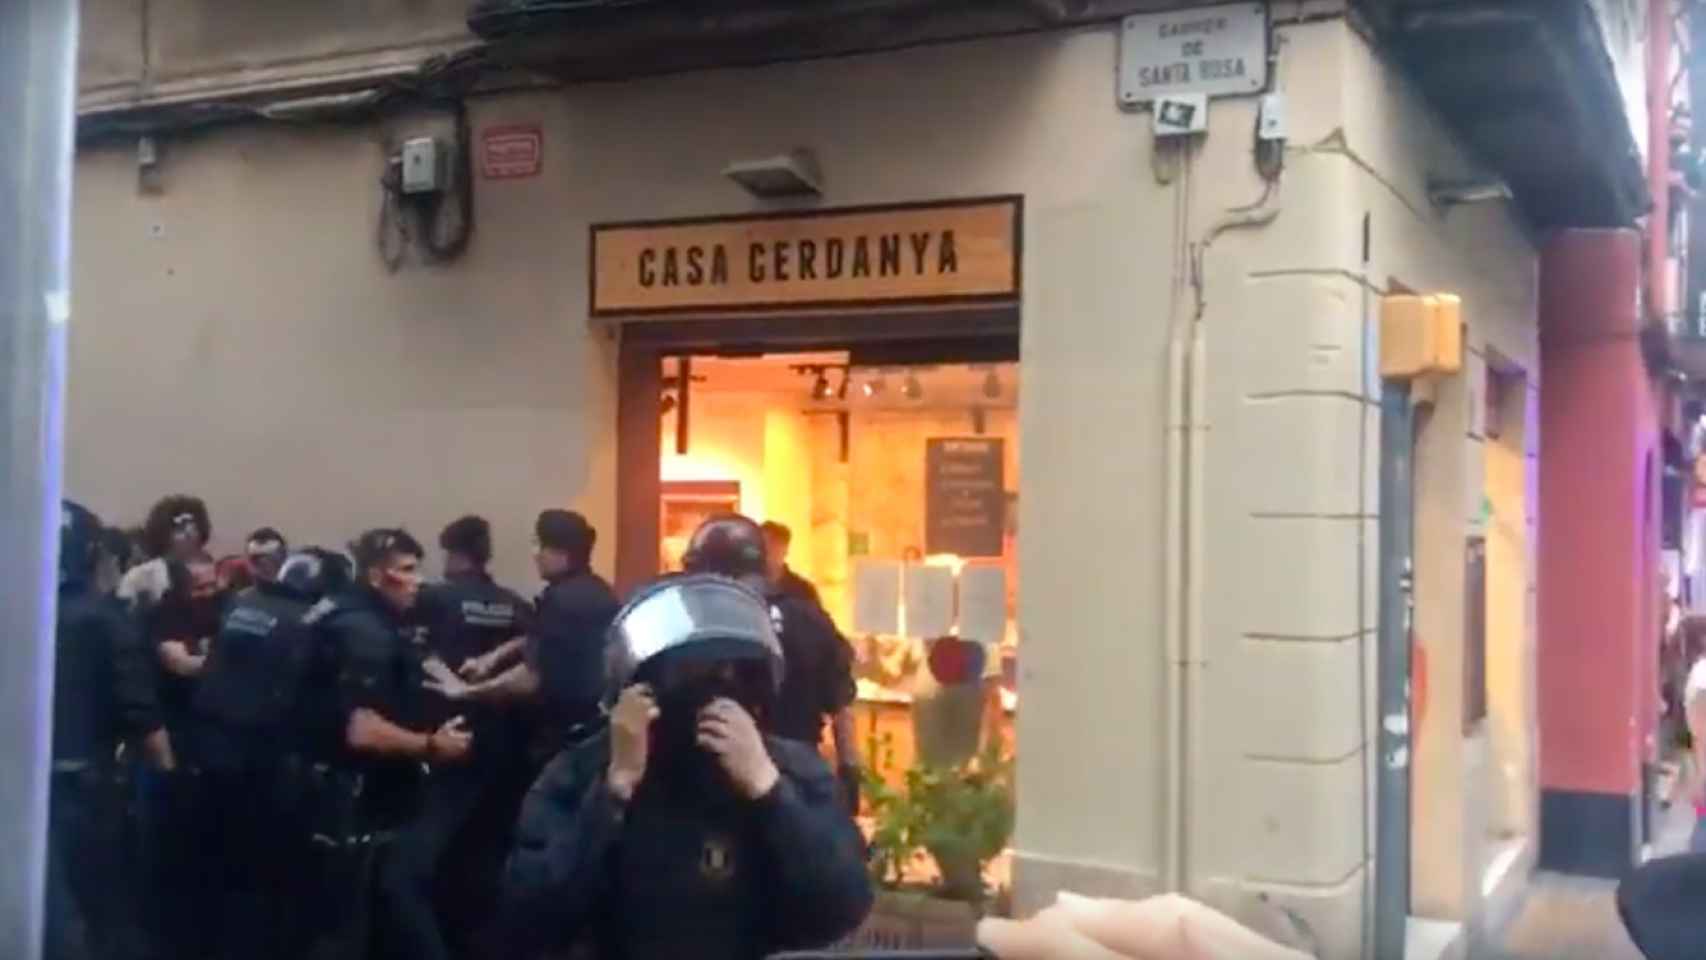 Cargas policiales contra los okupas de Gràcia / MA